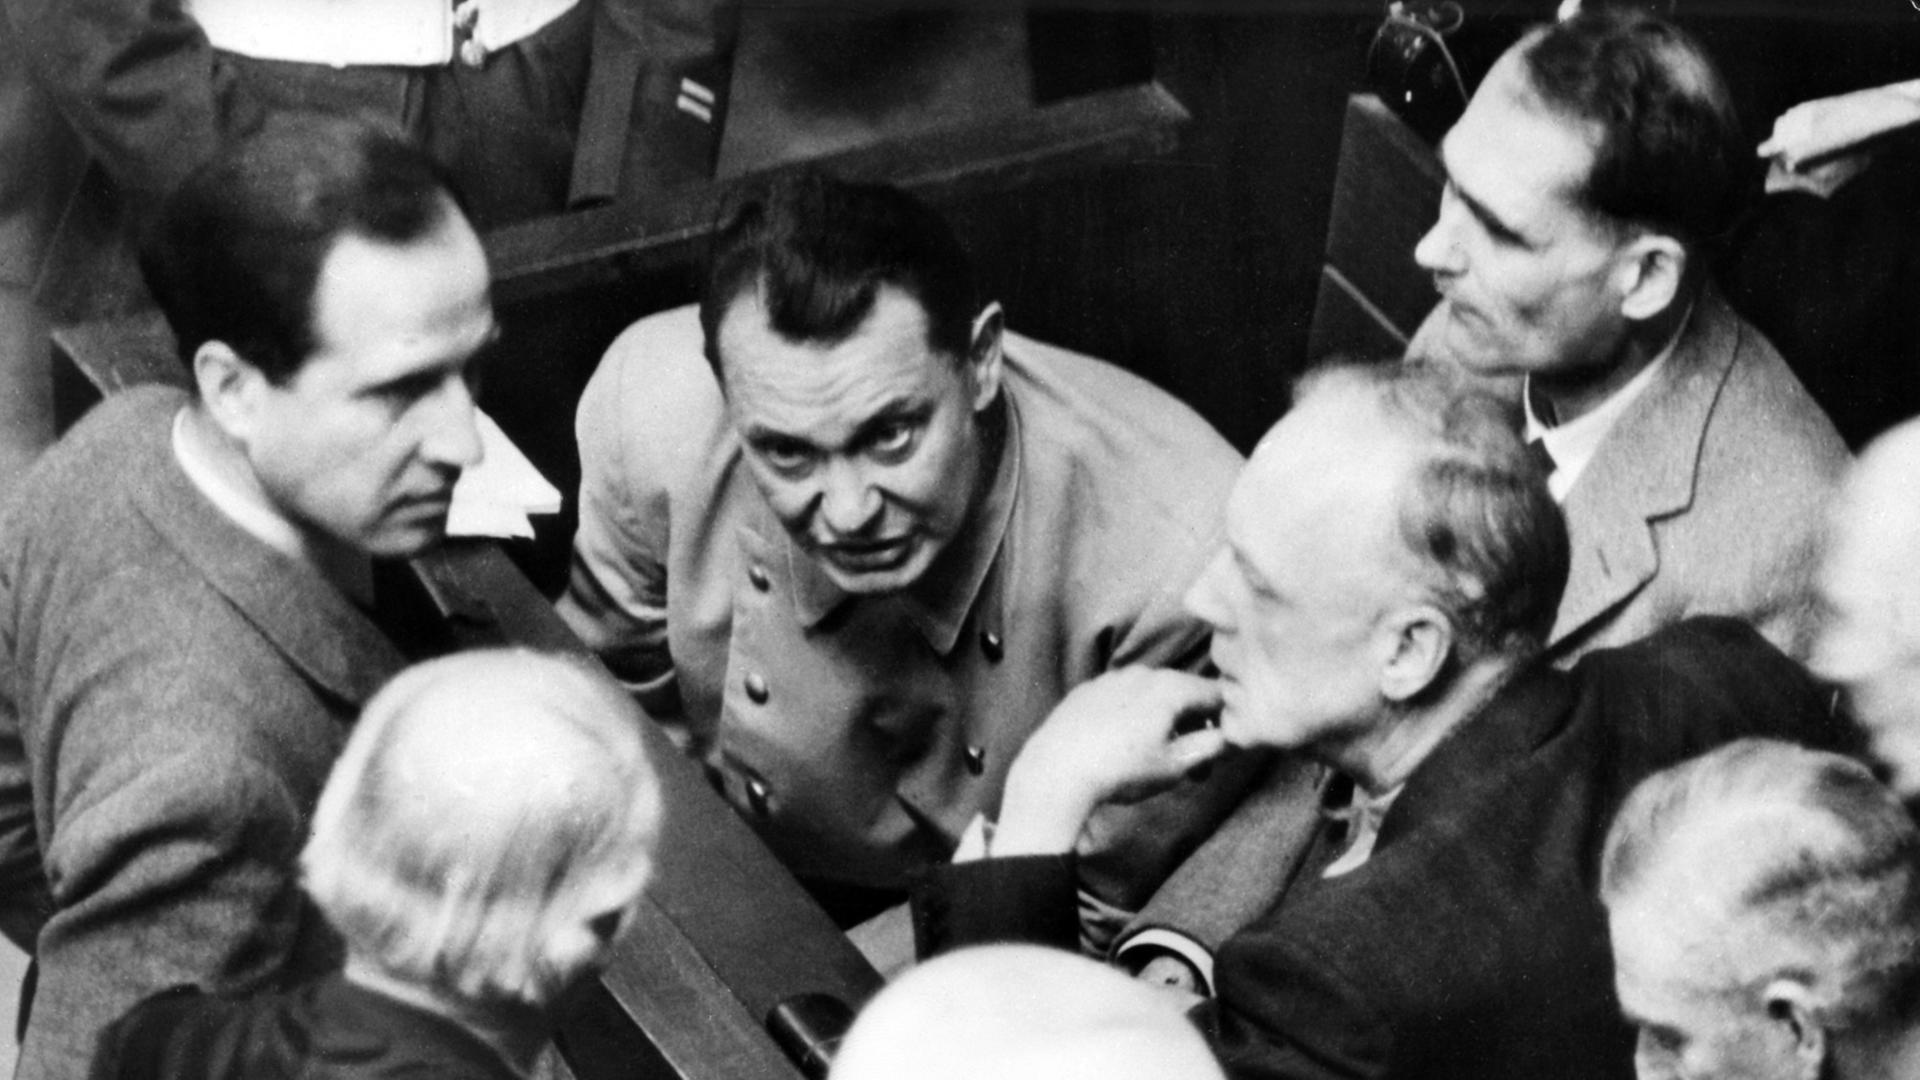 Die Hauptangeklagten (L-R) Hermann Göring, Rudolf Heß und Joachim von Ribbentrop auf der Anklagebank während der Nürnberger Hauptkriegsverbrecherprozesse am 13.02.1946 in Nürnberg.